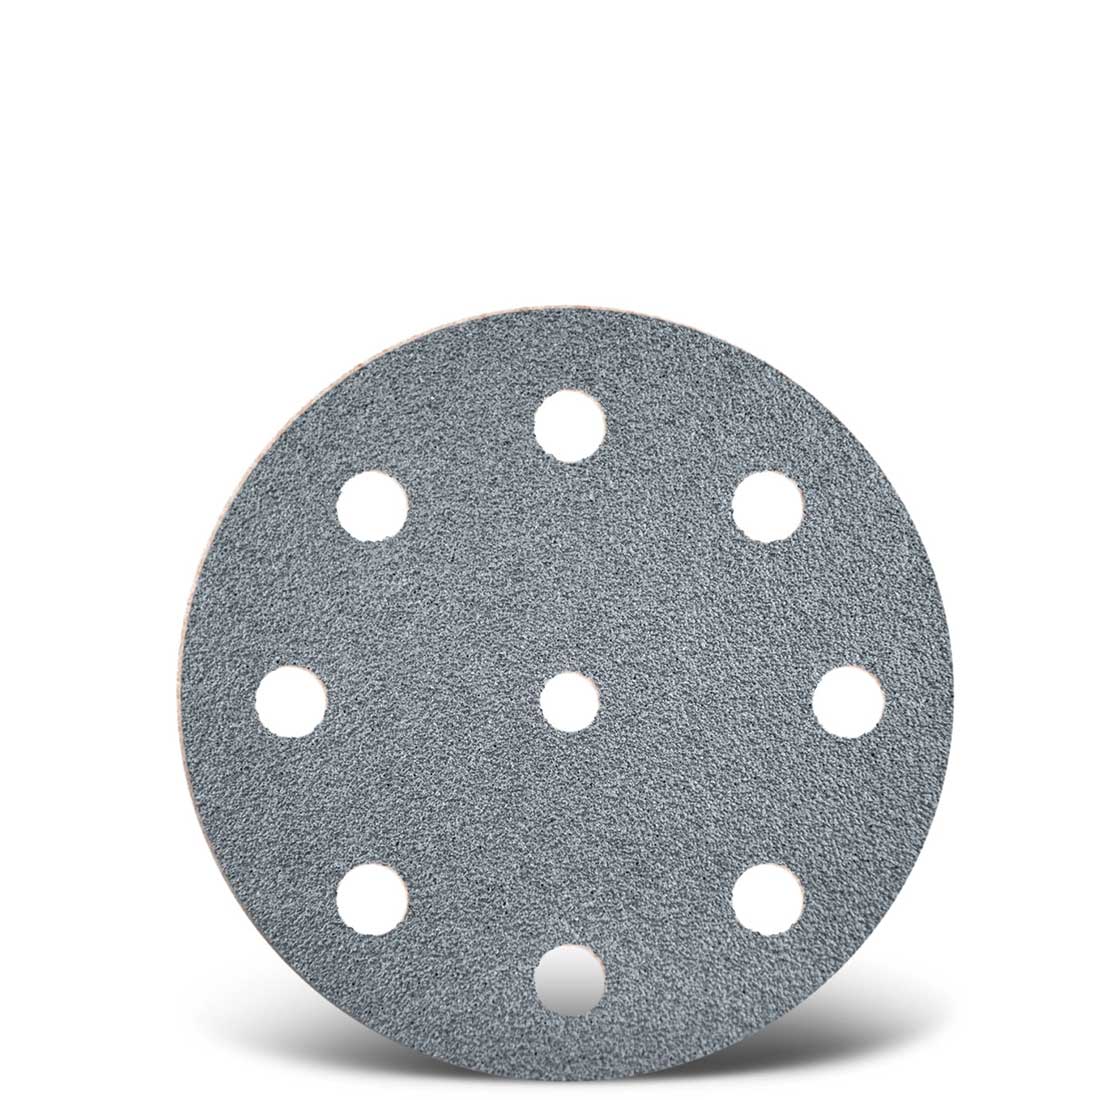 Dischi abrasivi velcrati MENZER per levigatrici rotorbitali, G40–400, Ø 125 mm / 9 fori / corindone semi-friabile con stearato